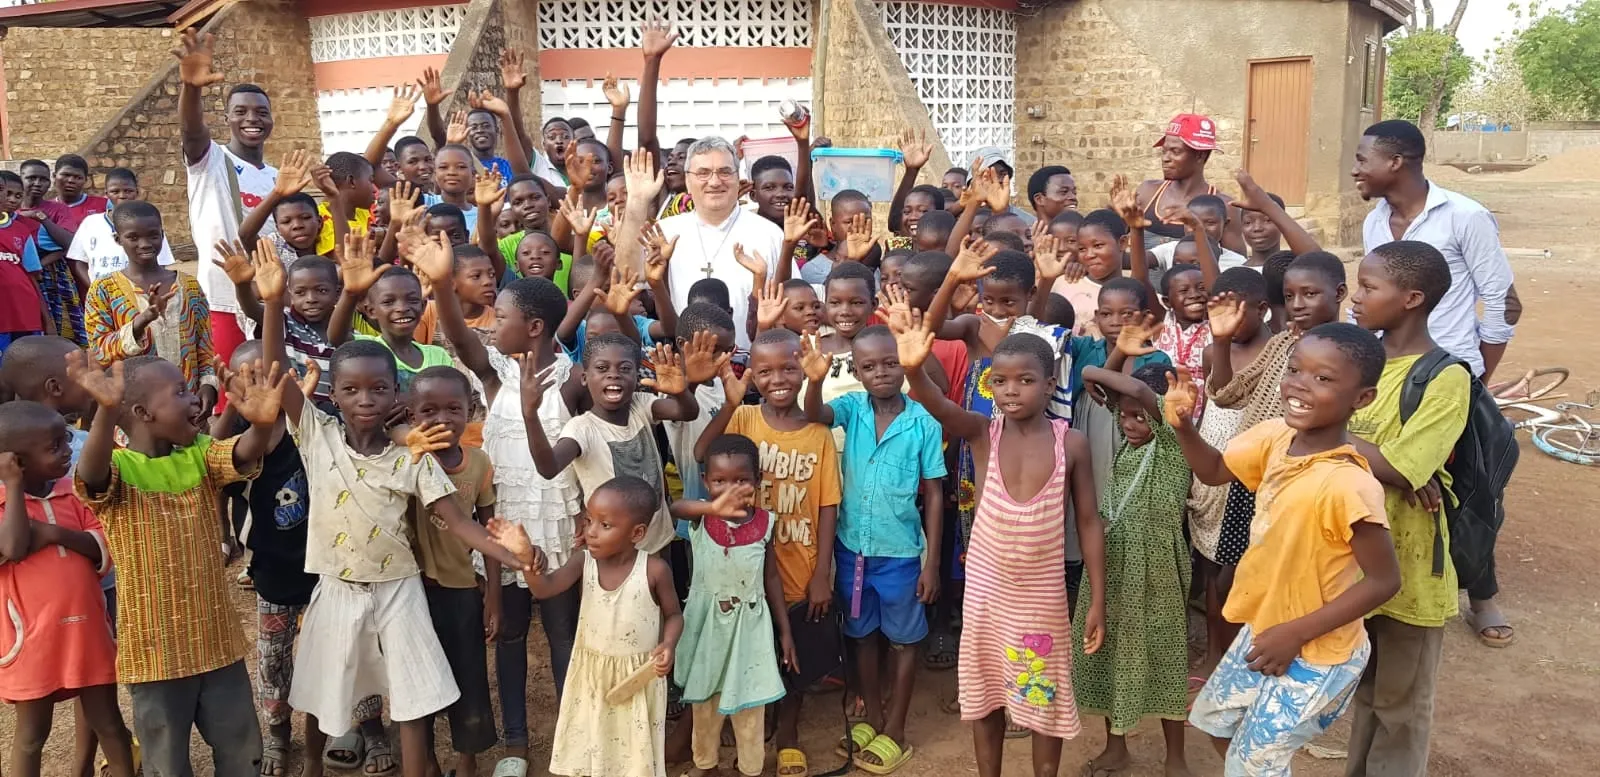 Zahvala don Ivana i nastavak pomoći misiji u Gani